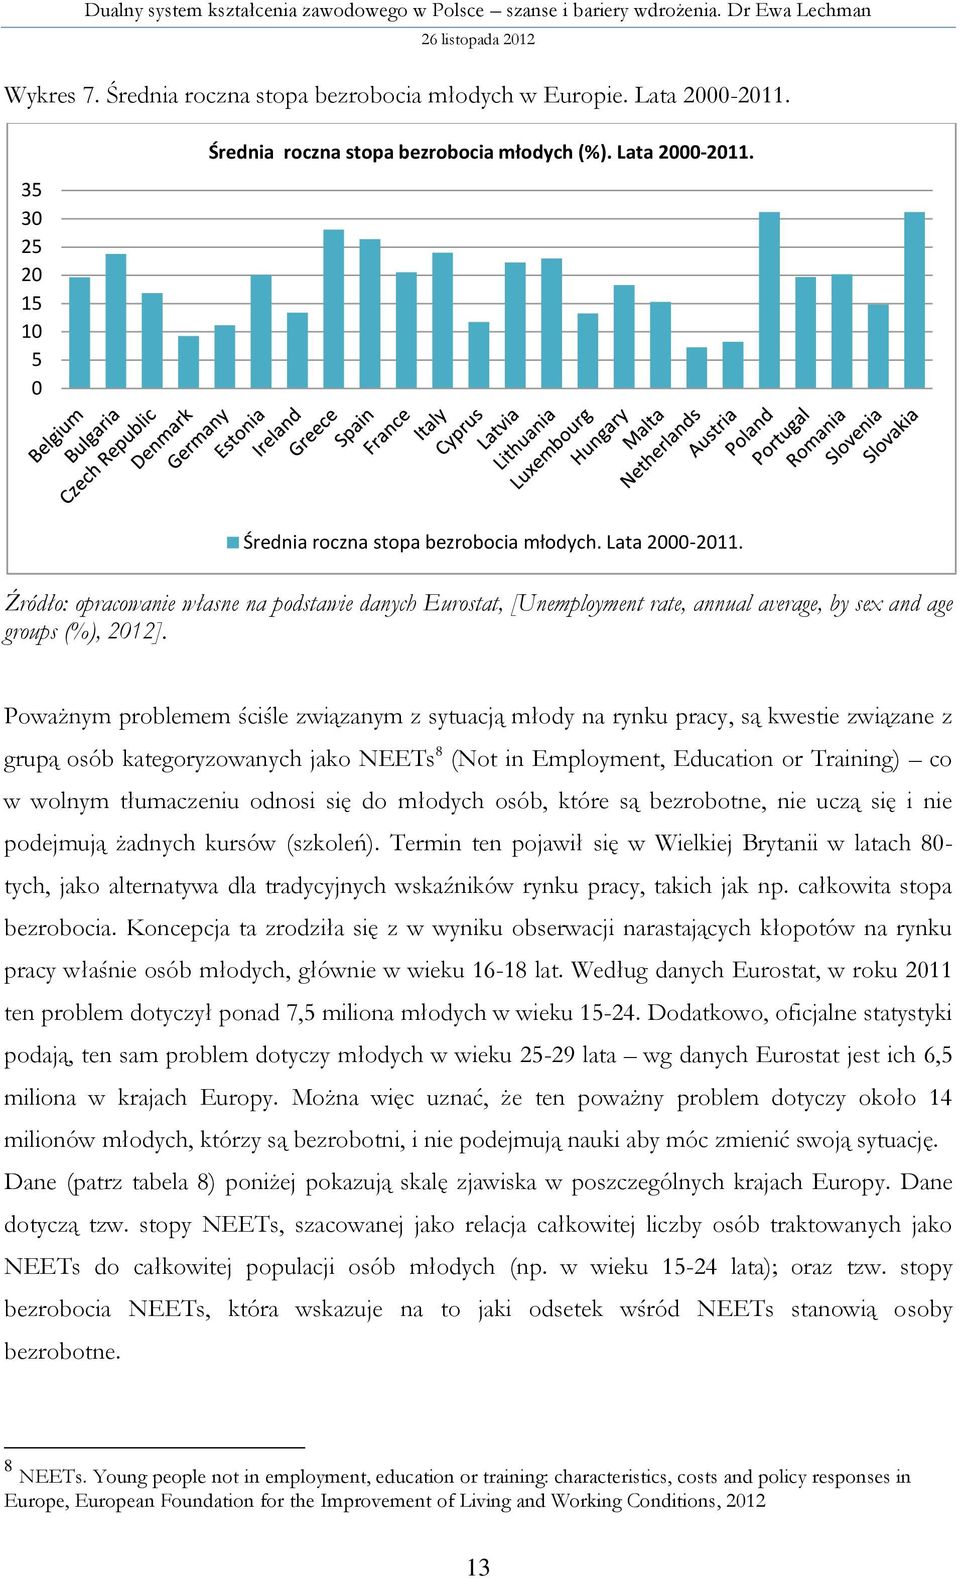 Średnia roczna stopa bezrobocia młodych. Lata 2000-2011. Źródło: opracowanie własne na podstawie danych Eurostat, [Unemployment rate, annual average, by sex and age groups (%), 2012].